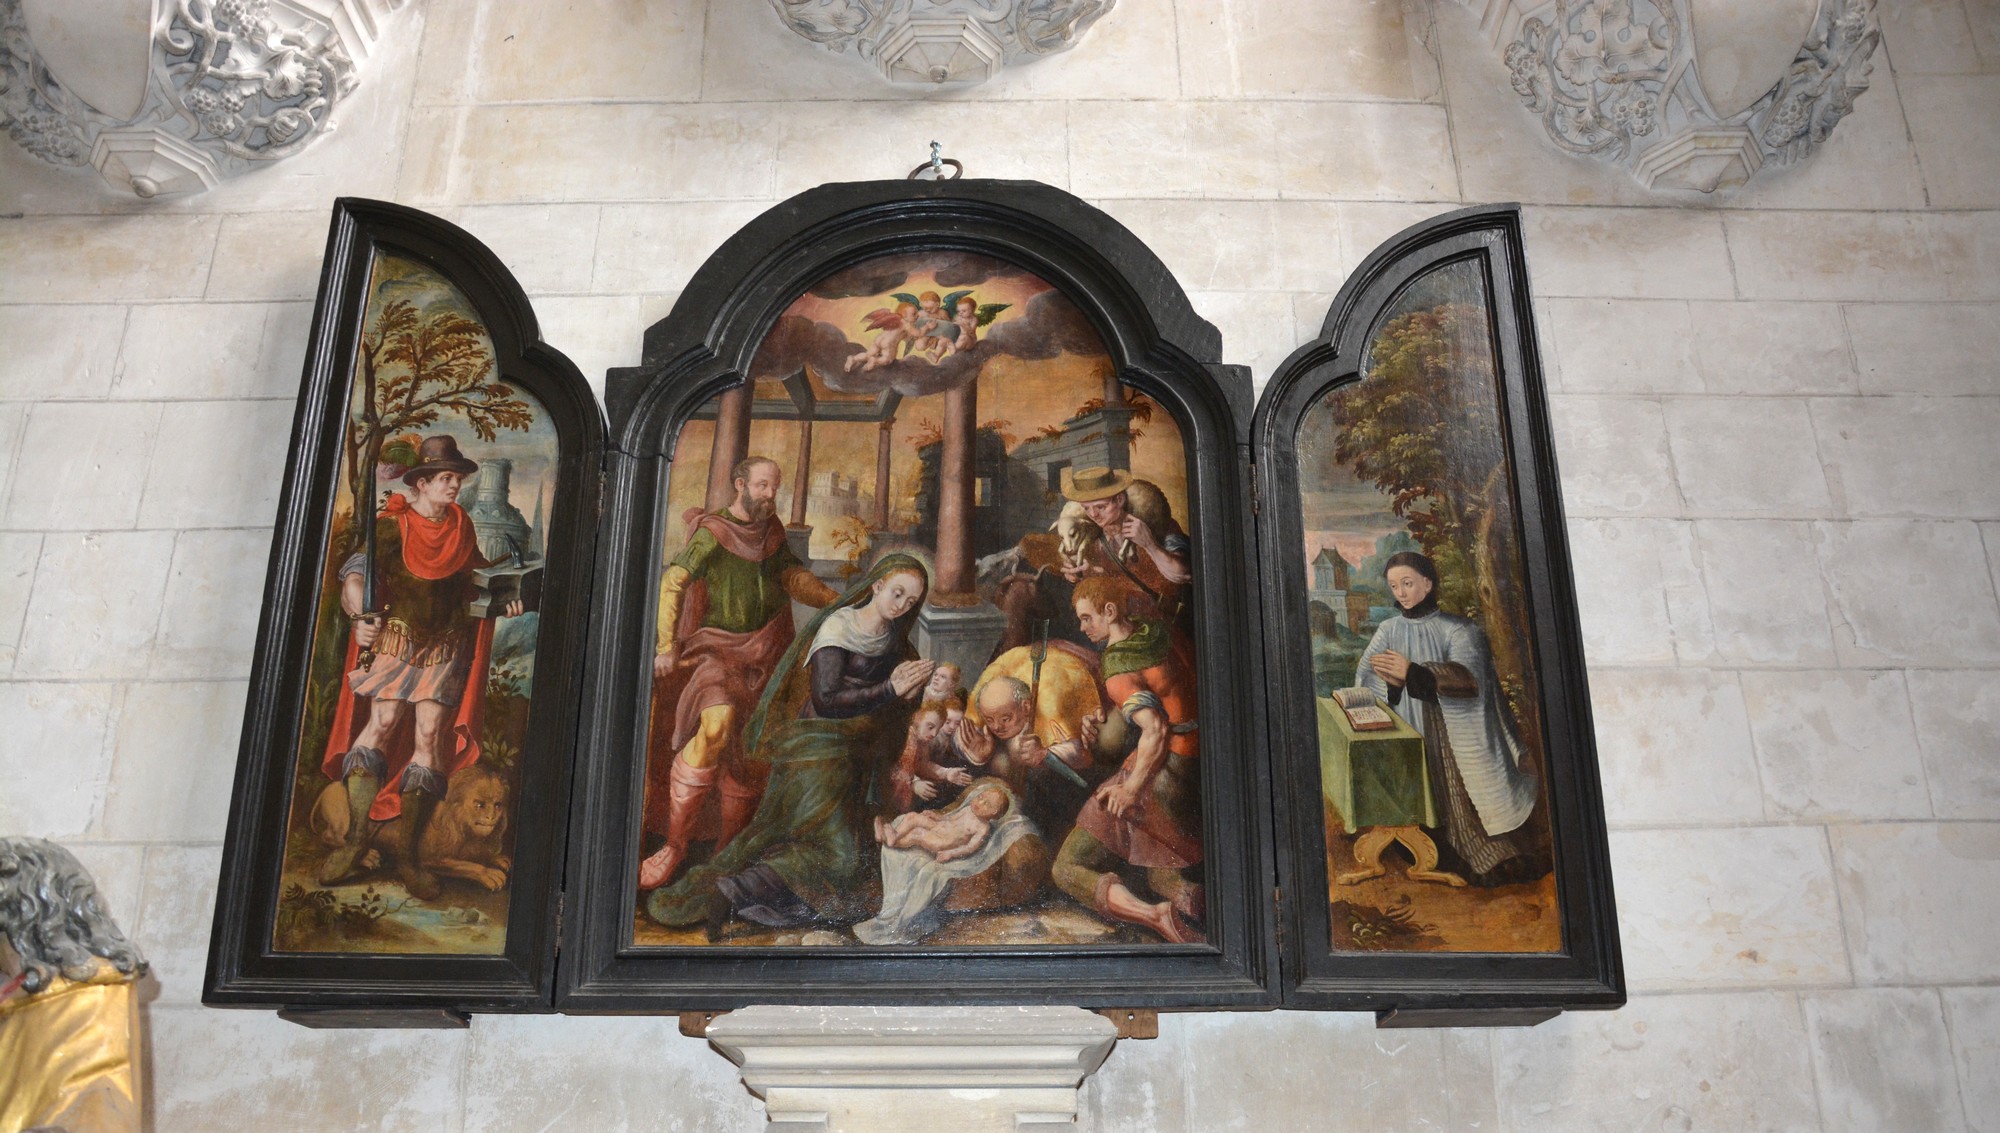 Cathédrale de Saint-Omer - Chapelle wissocq - tableau adoration des bergers-voir description en haut de page